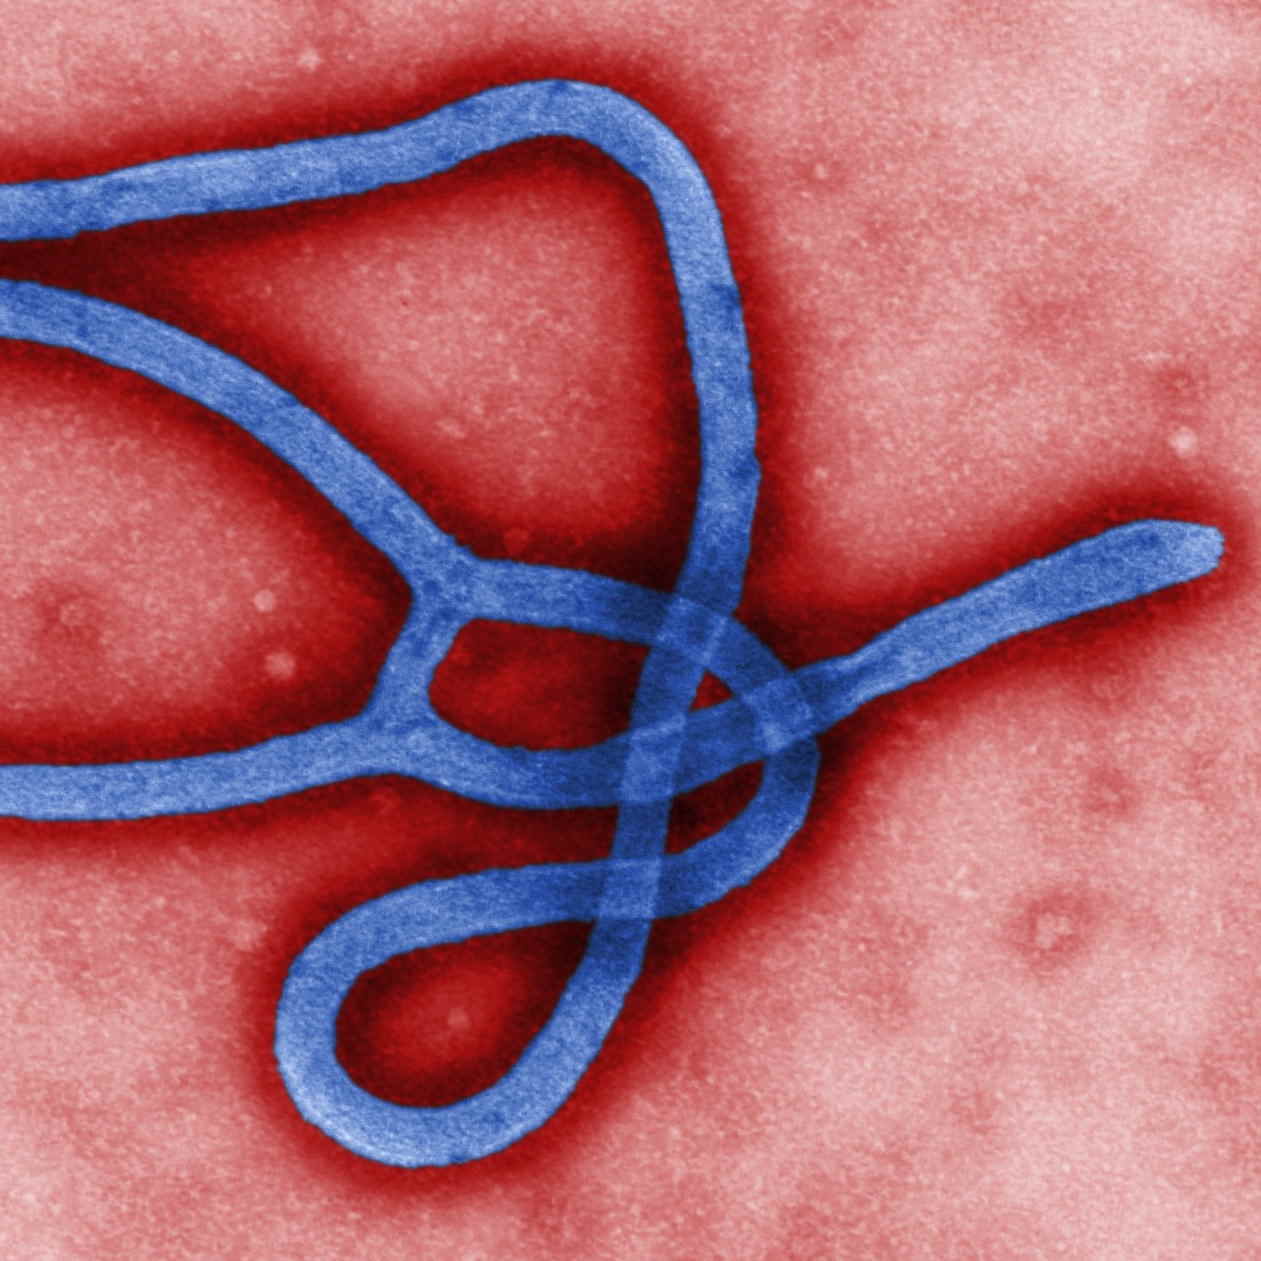 angeblicher Ebola Erreger Krankheit Virus Ansteckung Gefahr toedlich Pandemie